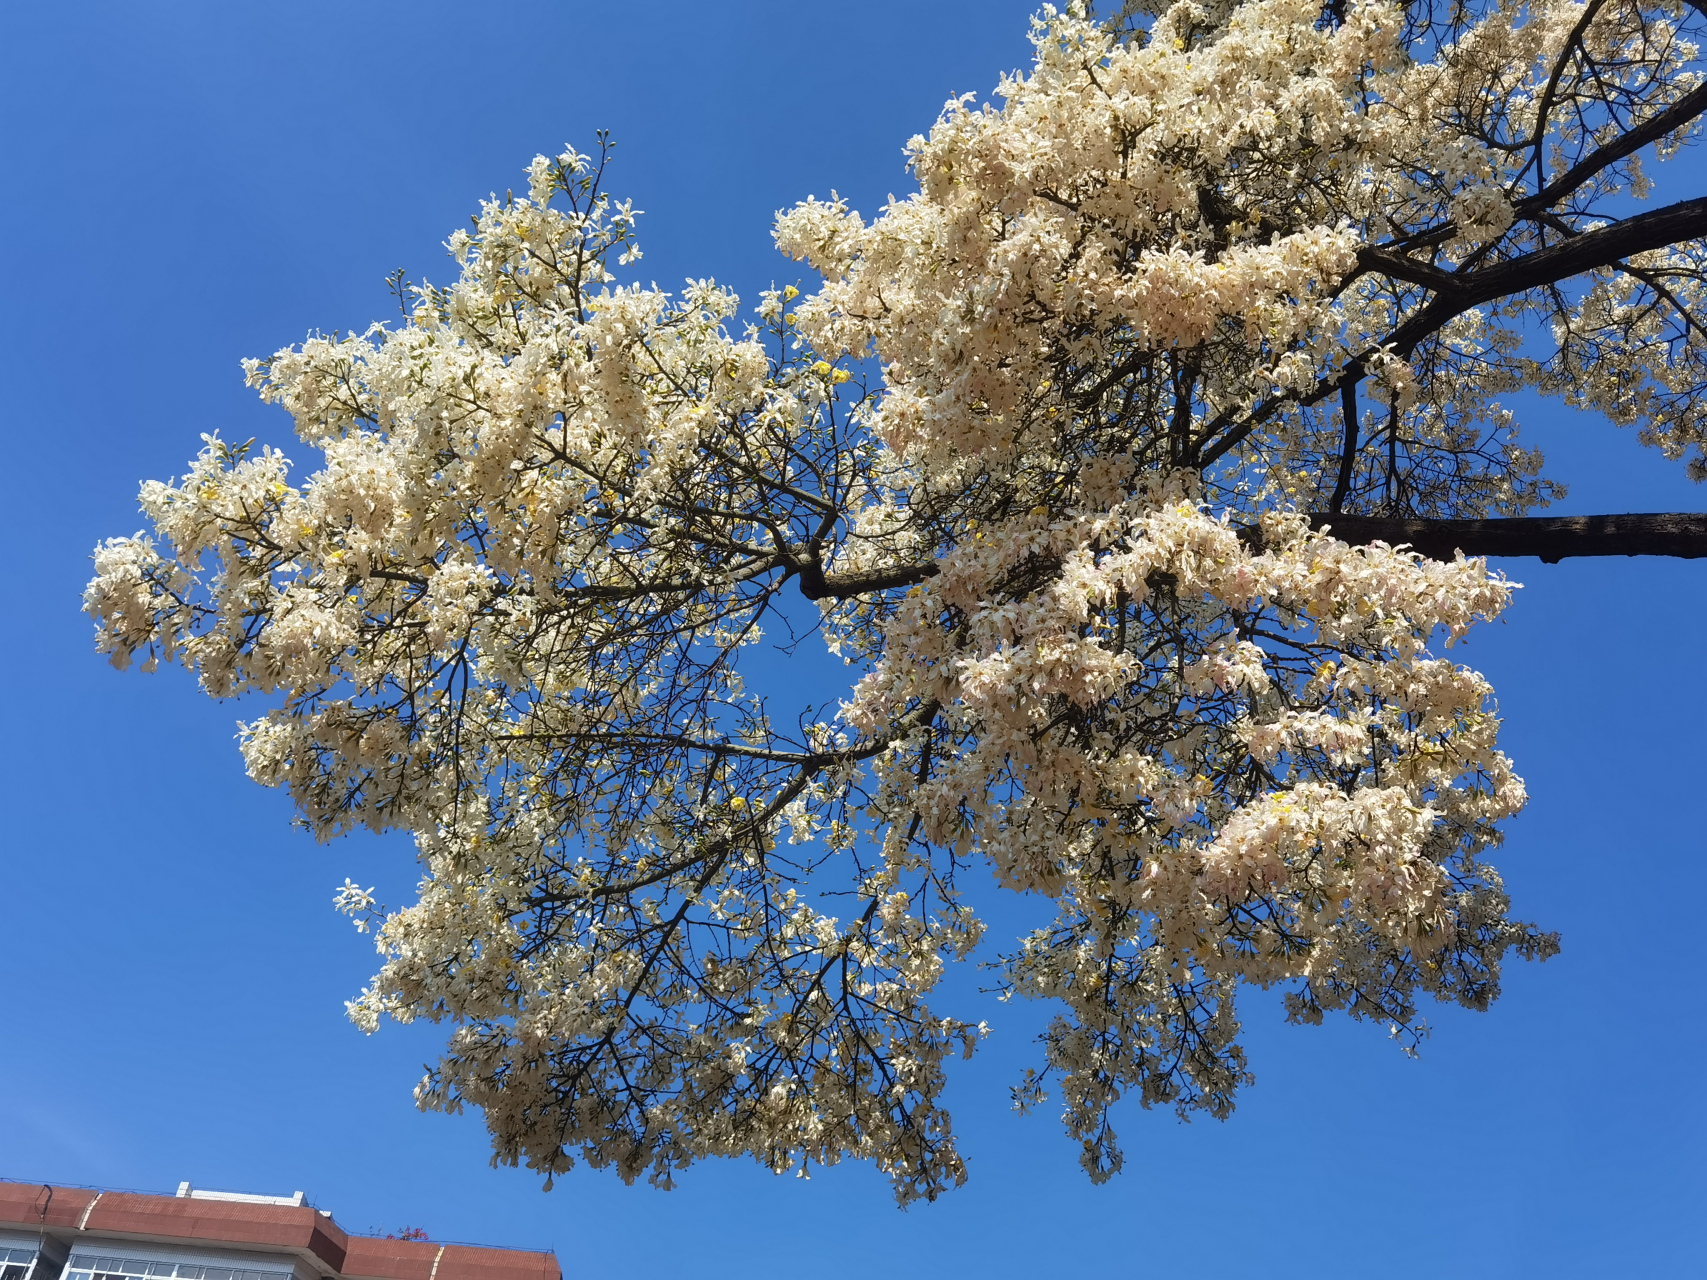 华南师范大学的校园内有一颗白色的异木棉树,这异木棉树不仅是自然